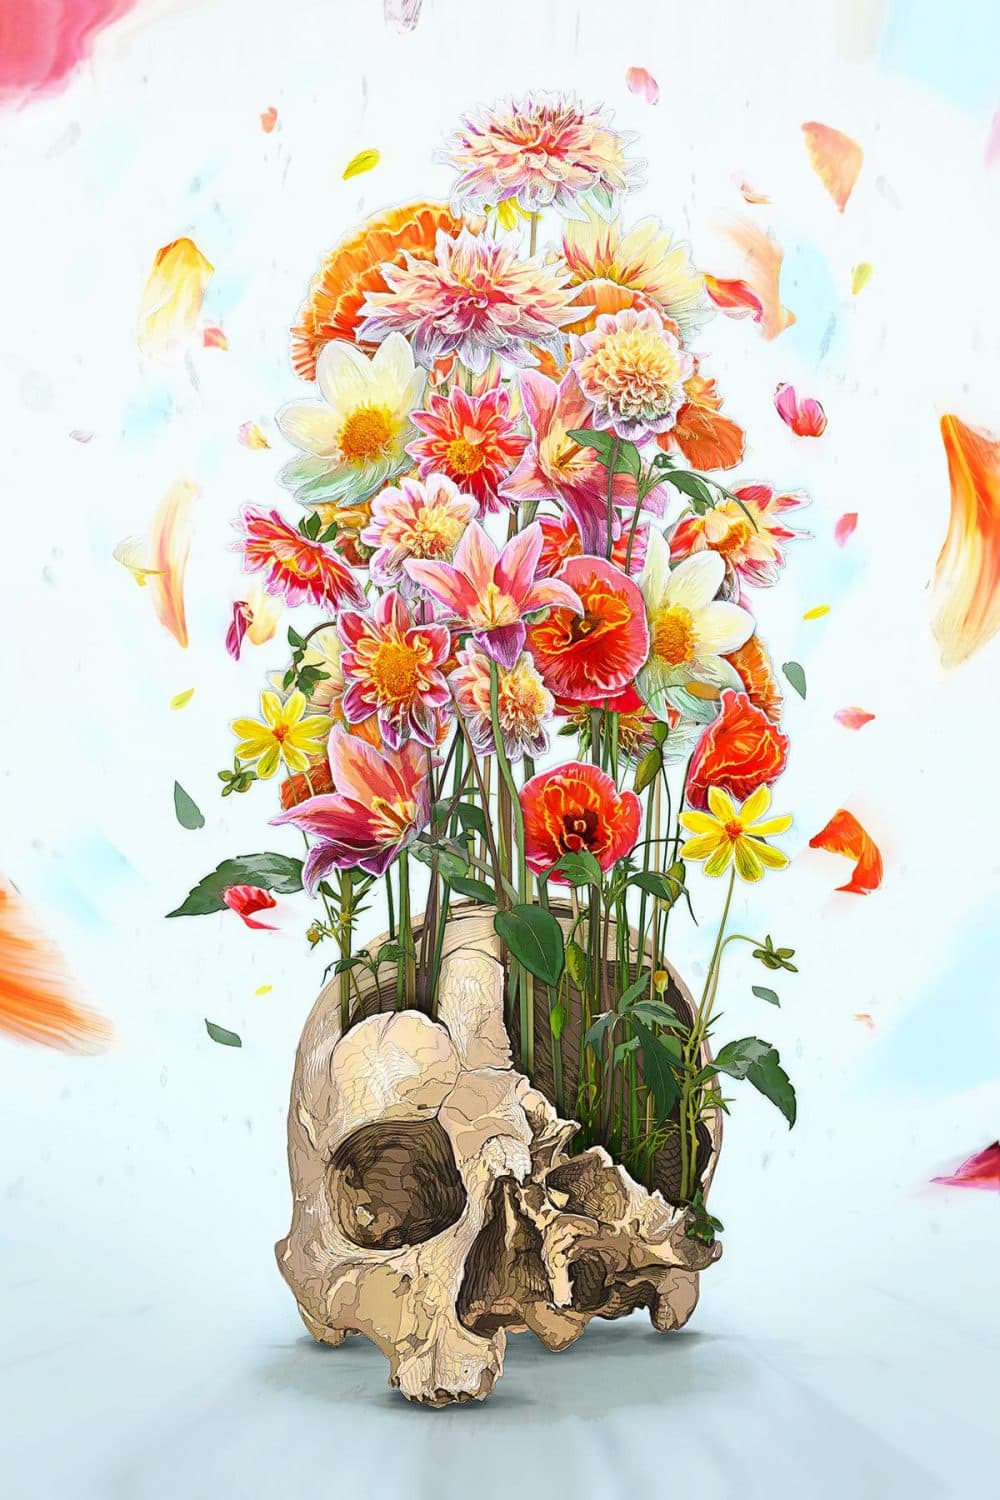 "Life after death," digital illustration, 7000x10,000. (Courtesy u/iamrtb)